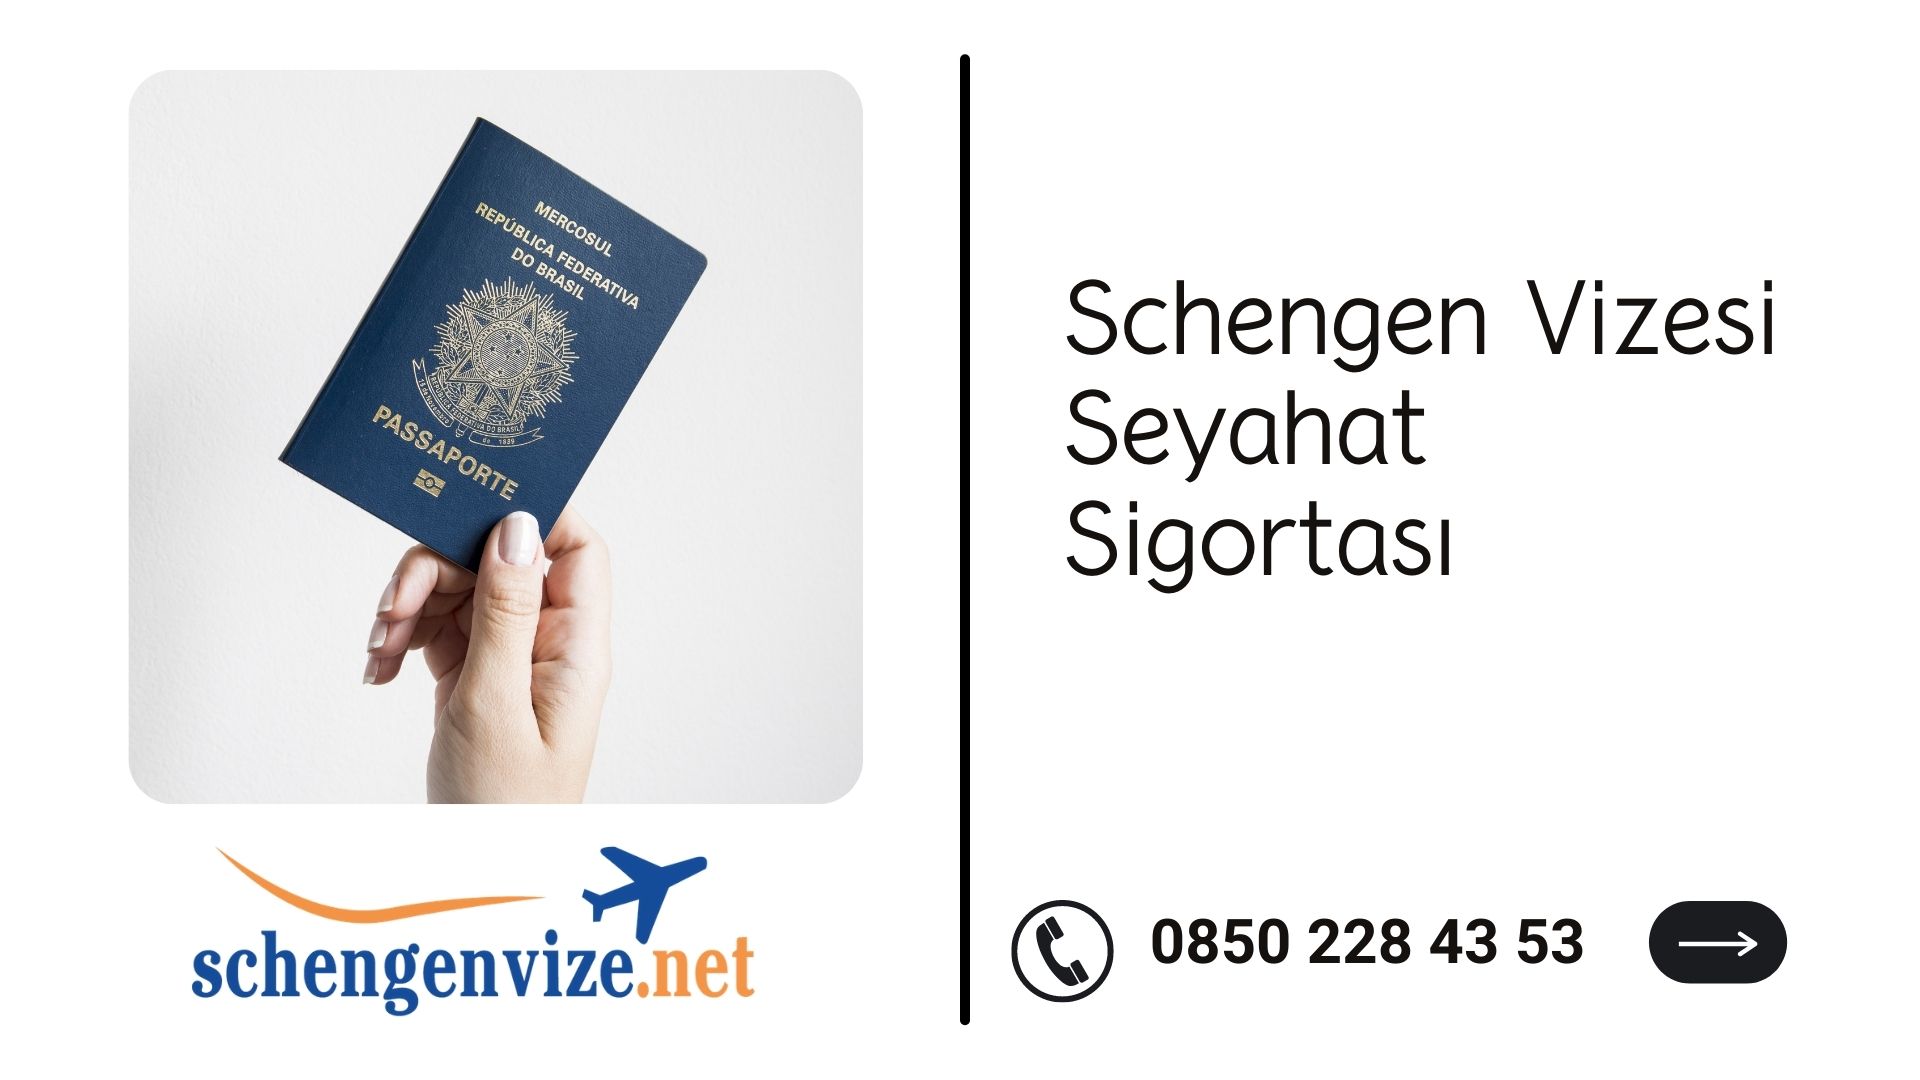 Schengen Vizesi Seyahat Sigortası